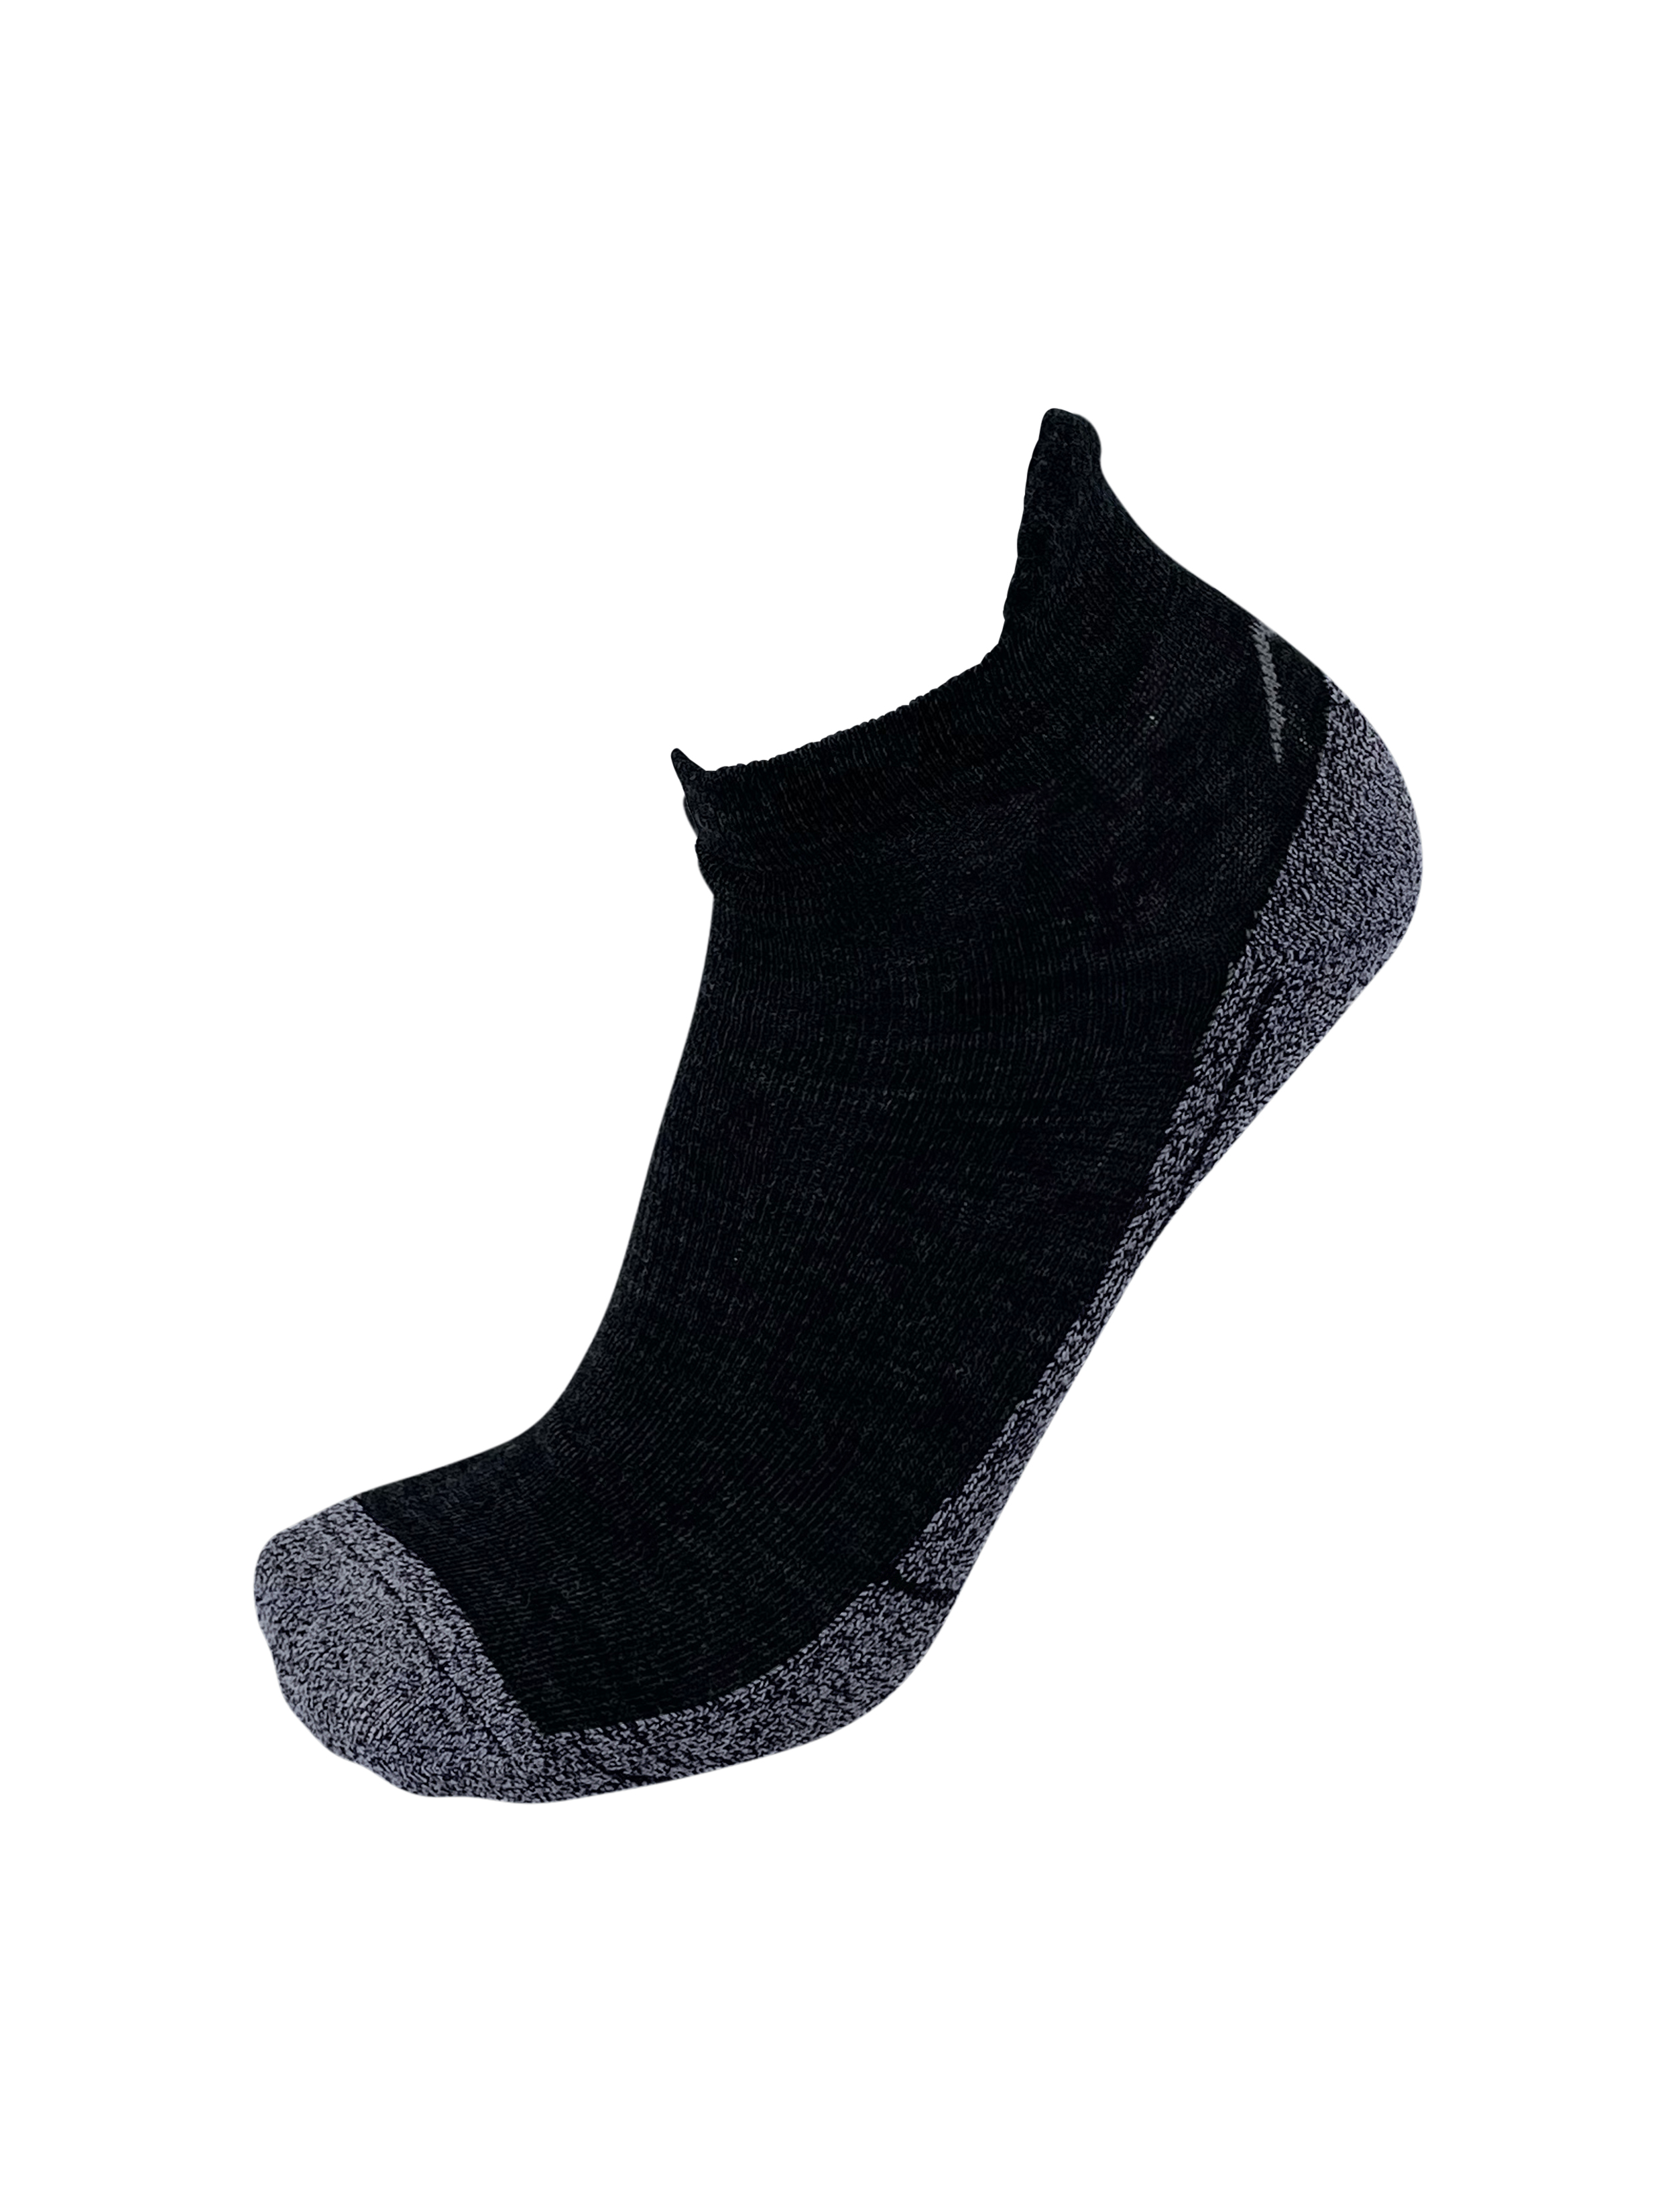 Outdoor-Socken "Vohenstrauß" Short |Merino|